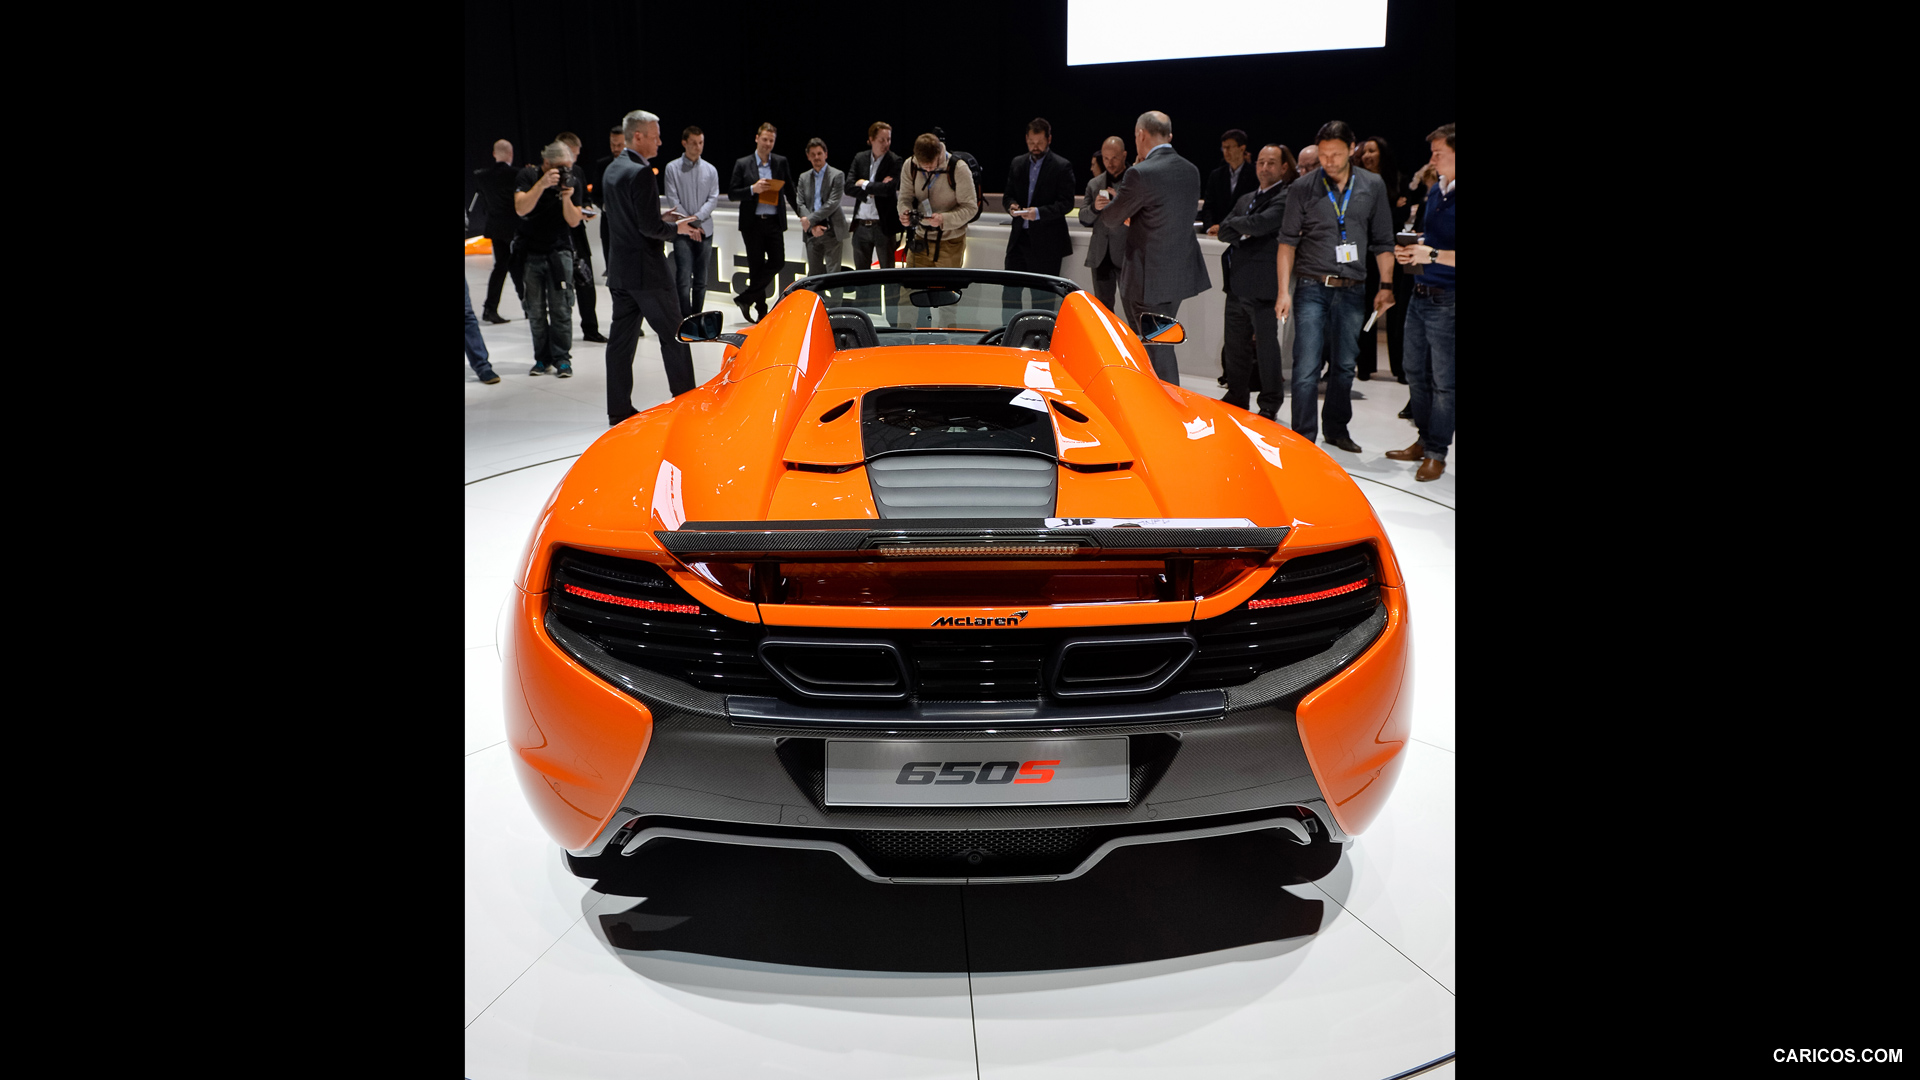 2015 McLaren 650S Spider - Presentation - Rear, #113 of 122